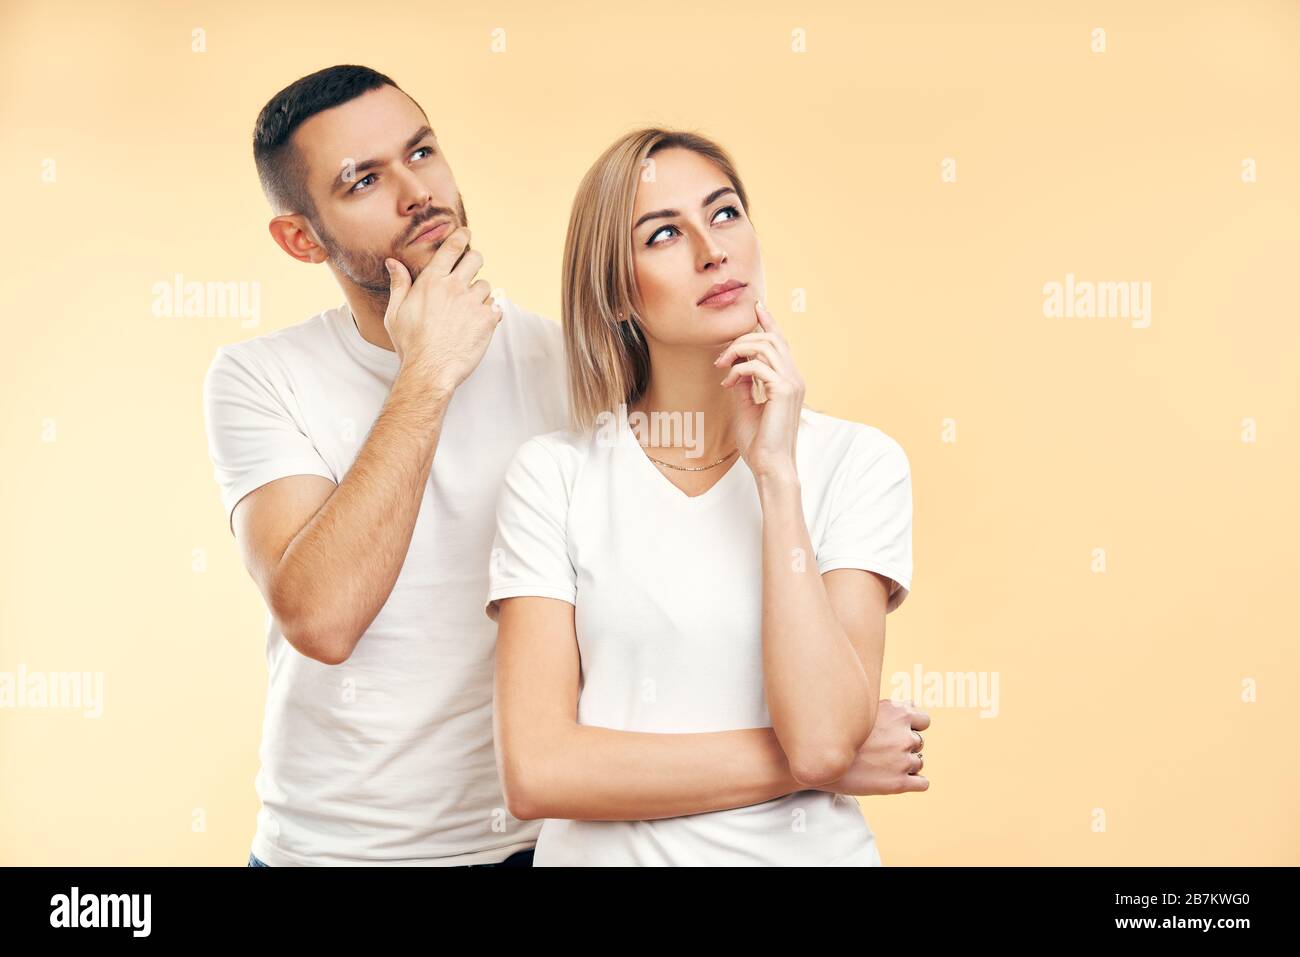 Jeune homme et femme pendus regardant latéralement isolé sur fond beige. Doute, concept d'intérêt Banque D'Images